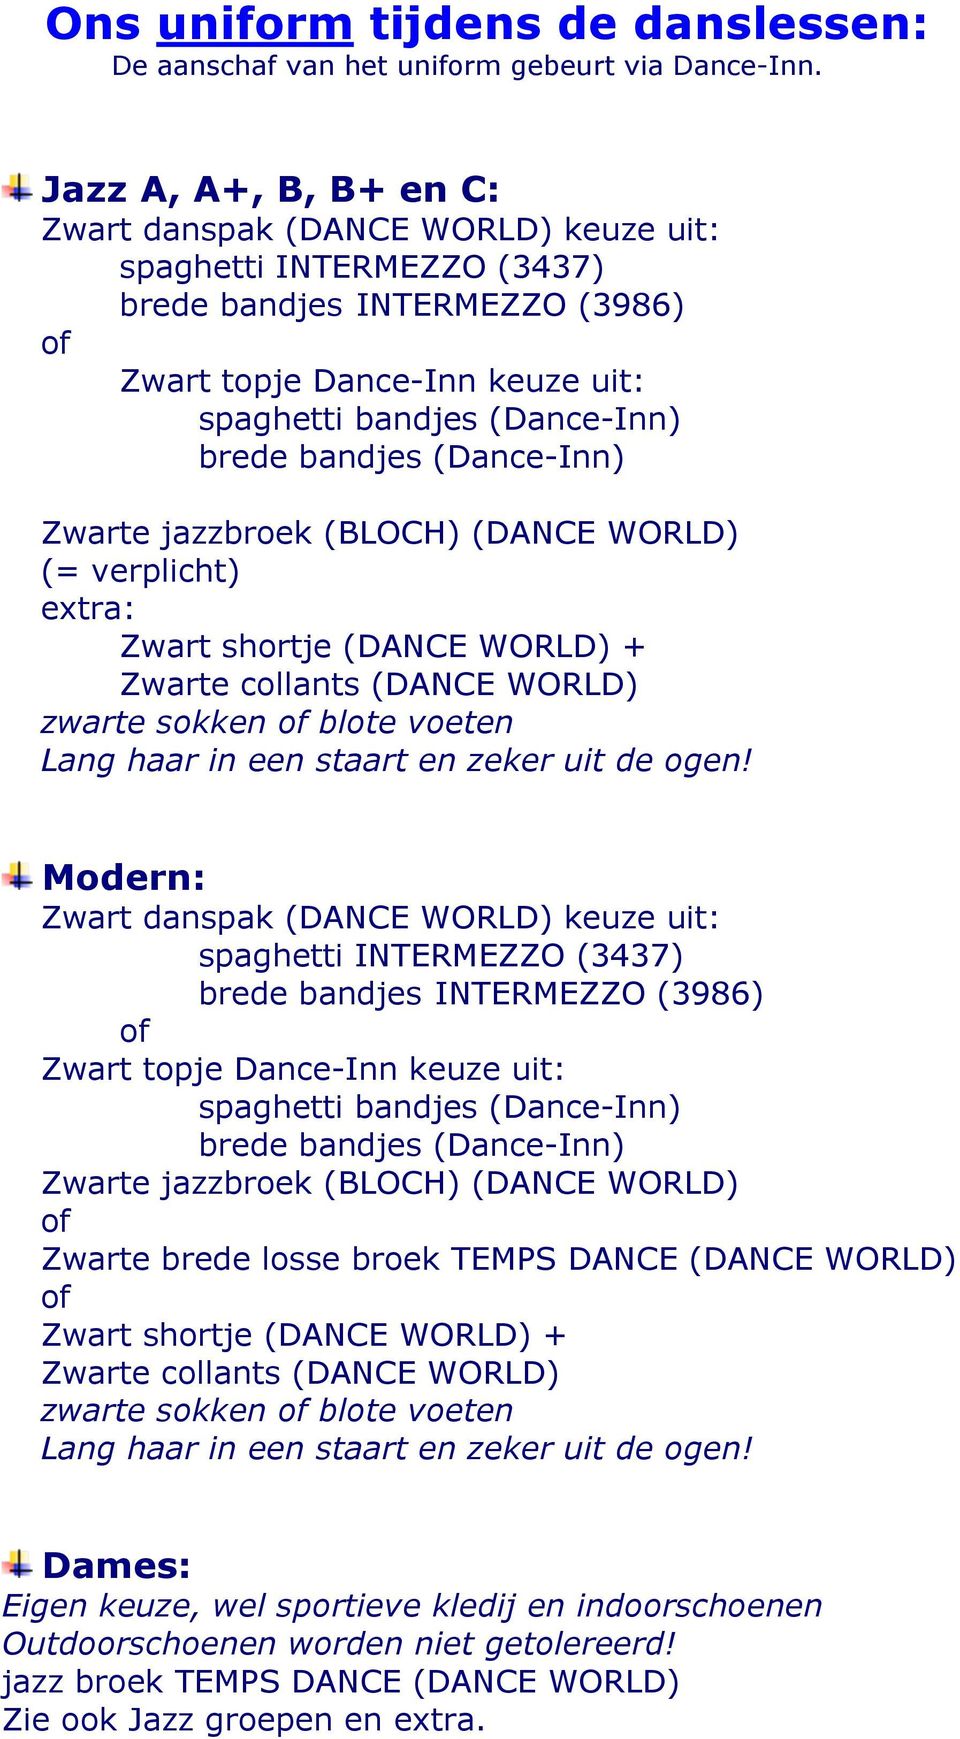 broek TEMPS DANCE (DANCE WORLD) Zwart shortje (DANCE WORLD) + Zwarte collants (DANCE WORLD) zwarte sokken blote voeten